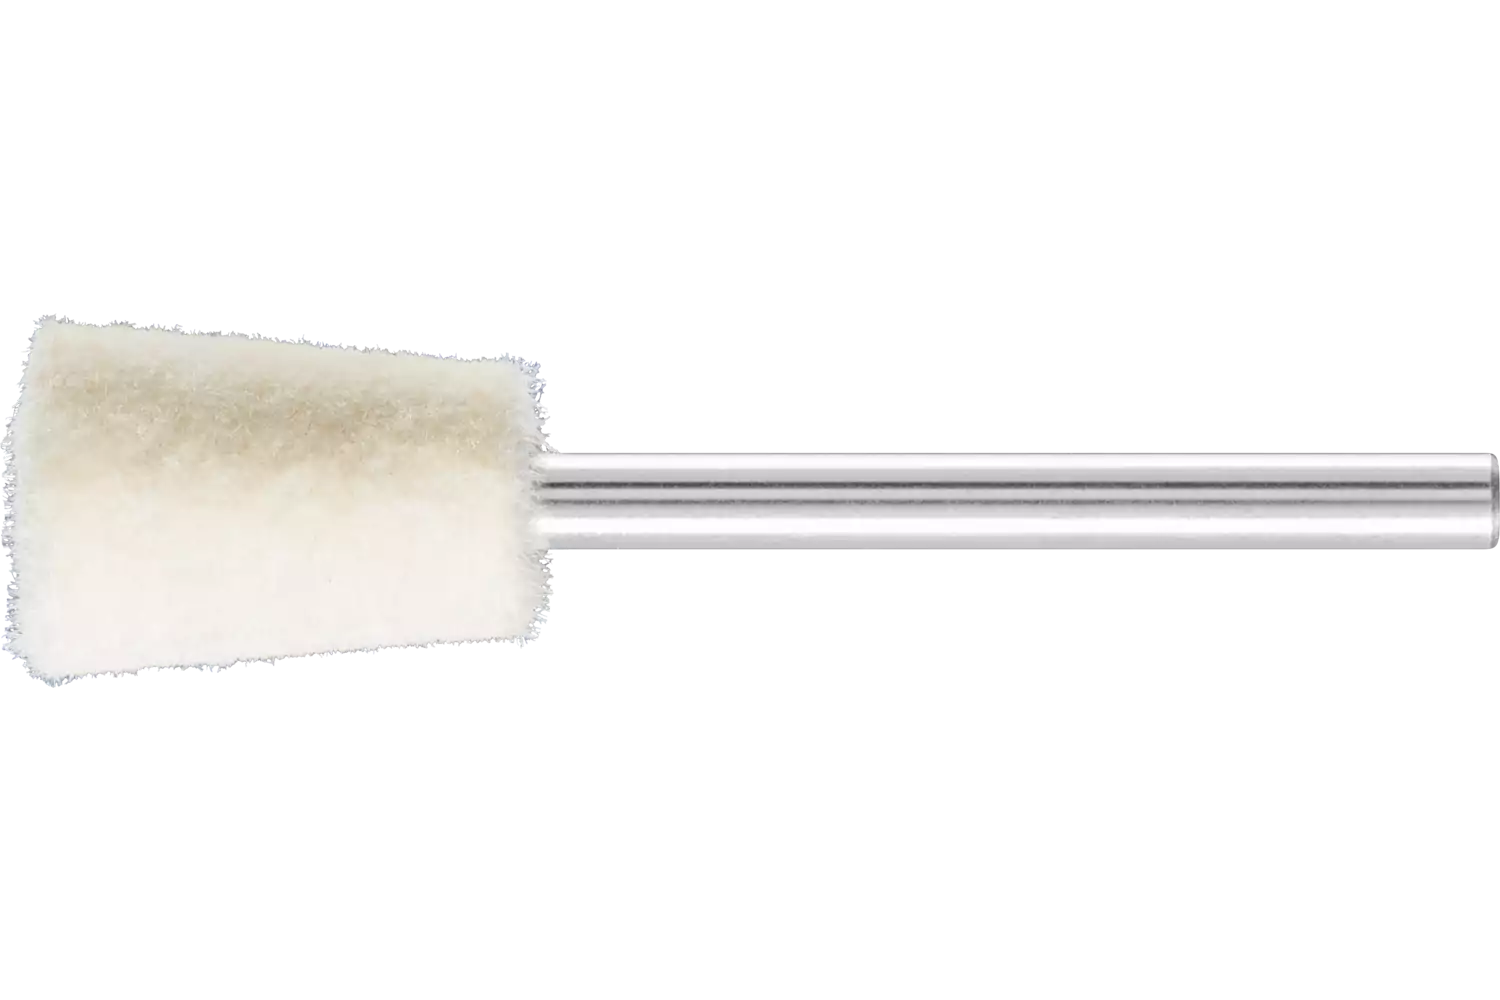 Feltri con gambo per lucidare medio-duri forma a cono rovesciato Ø 10x15 mm, gambo Ø 3 mm 1